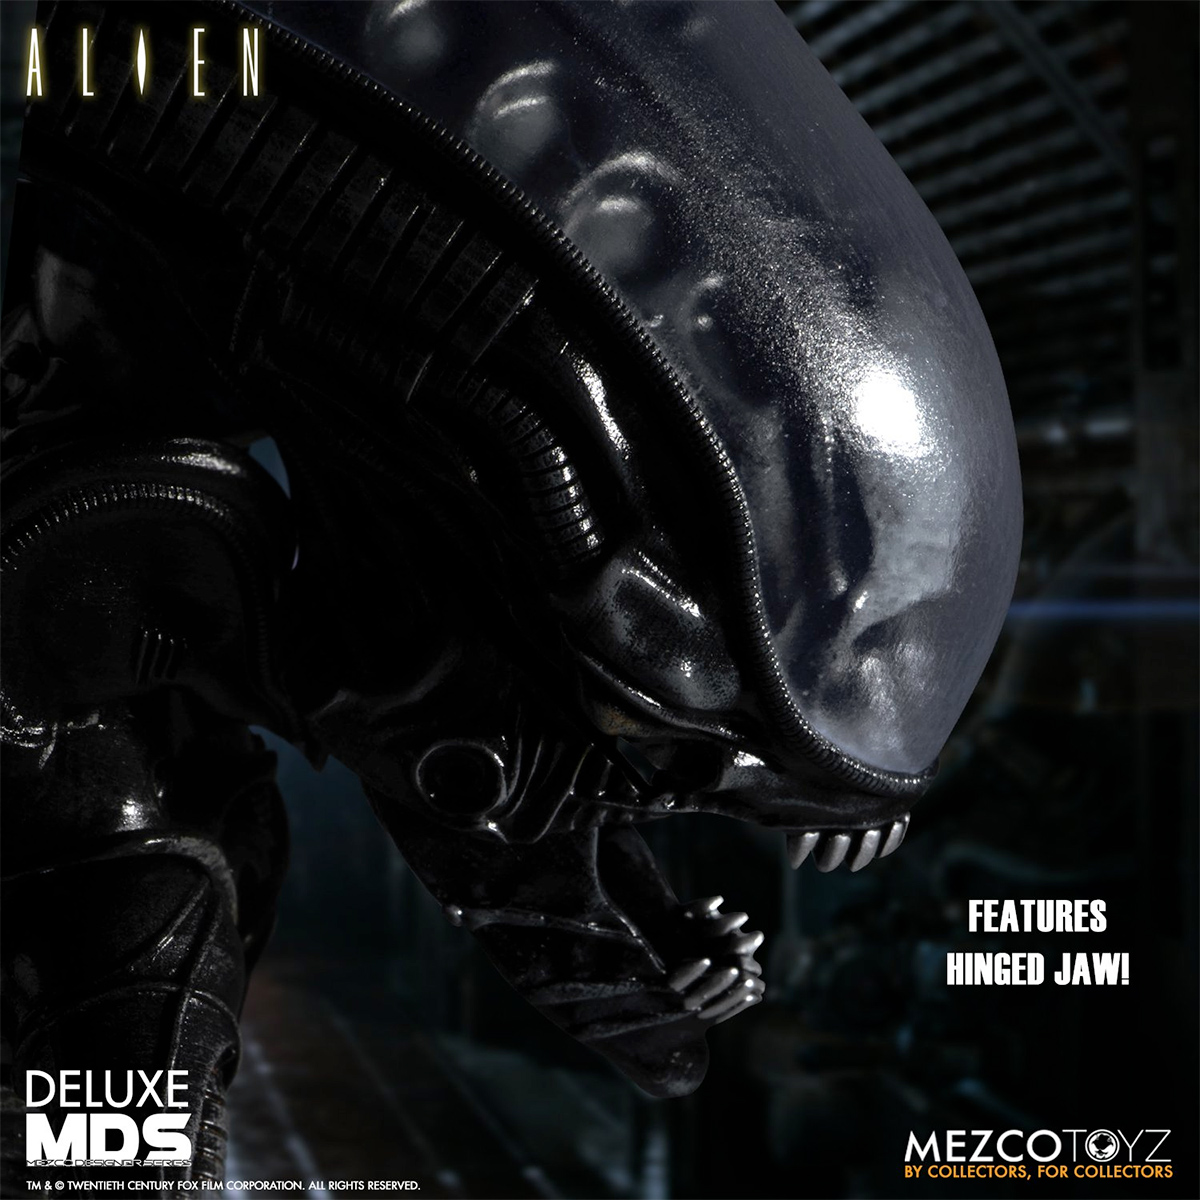 Boneco Alien Deluxe Mezco Designer Series MDS